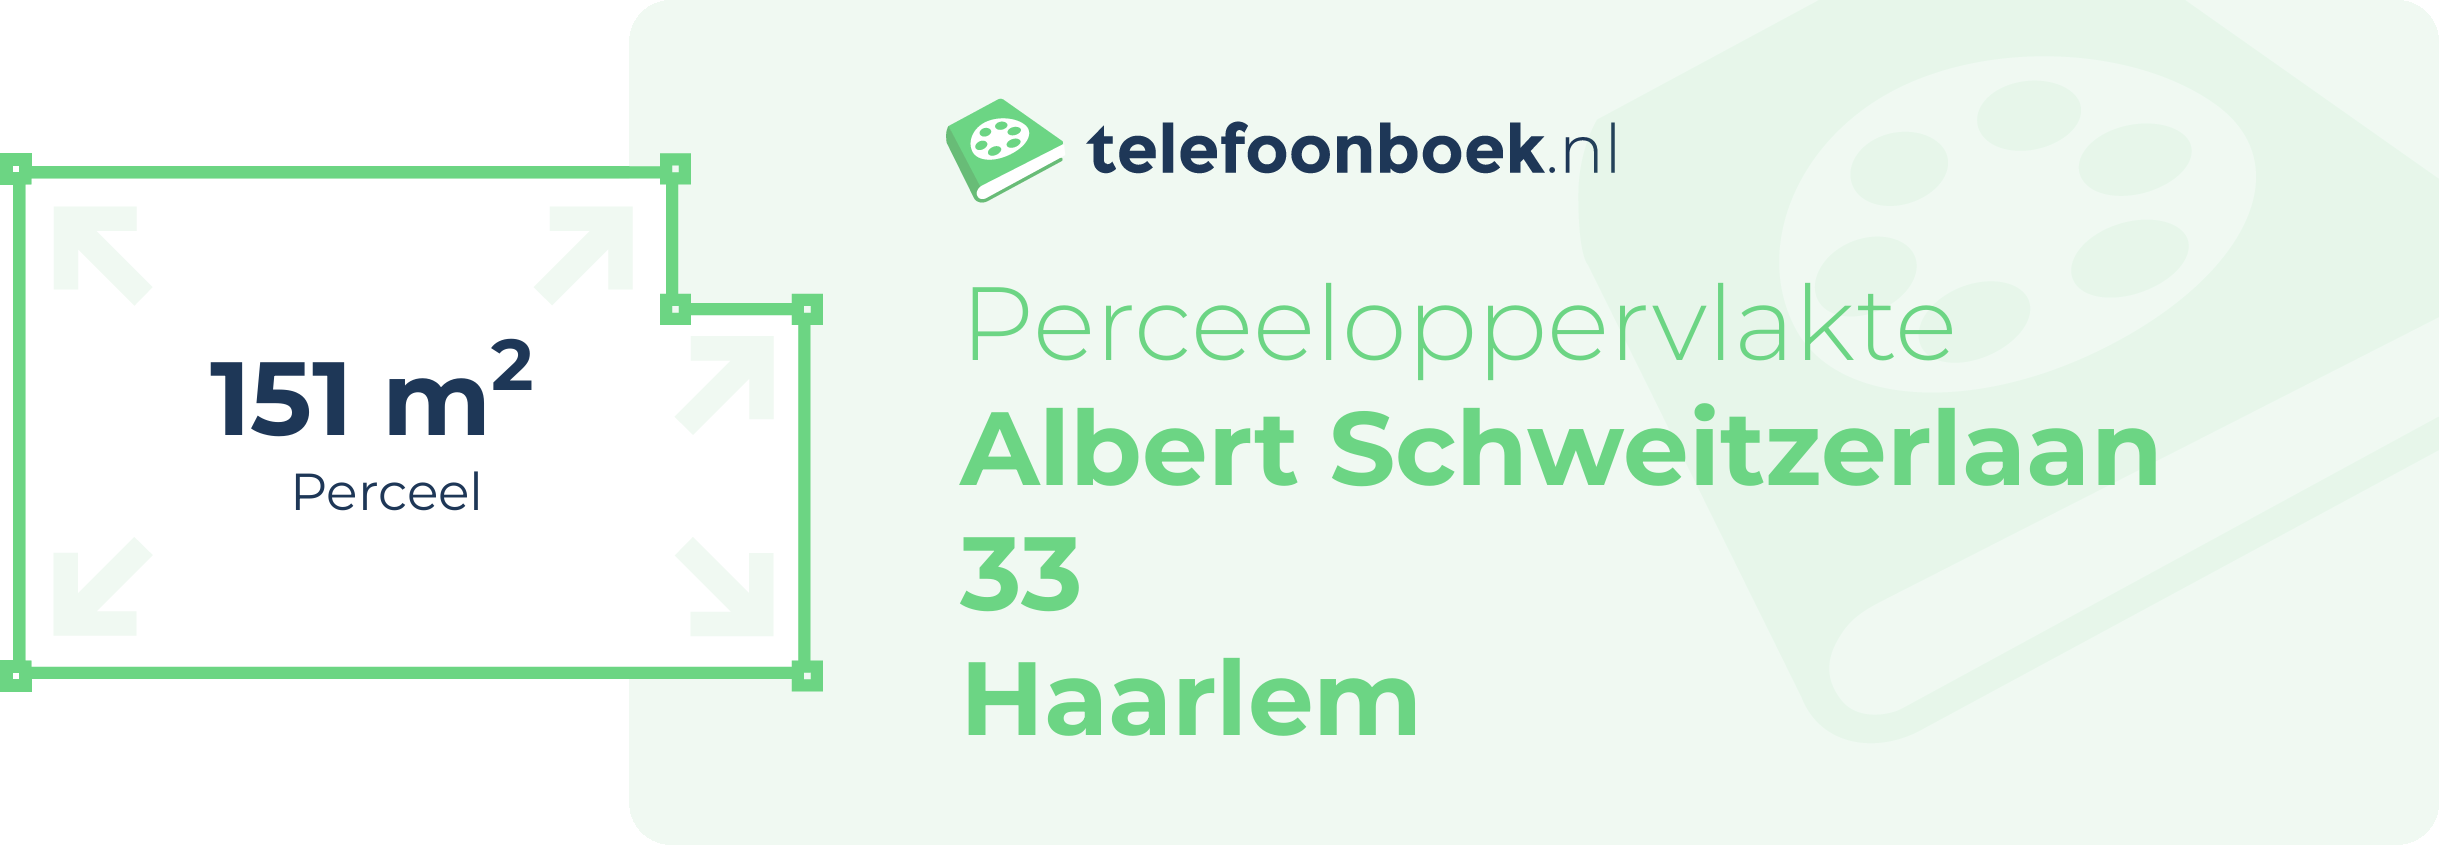 Perceeloppervlakte Albert Schweitzerlaan 33 Haarlem